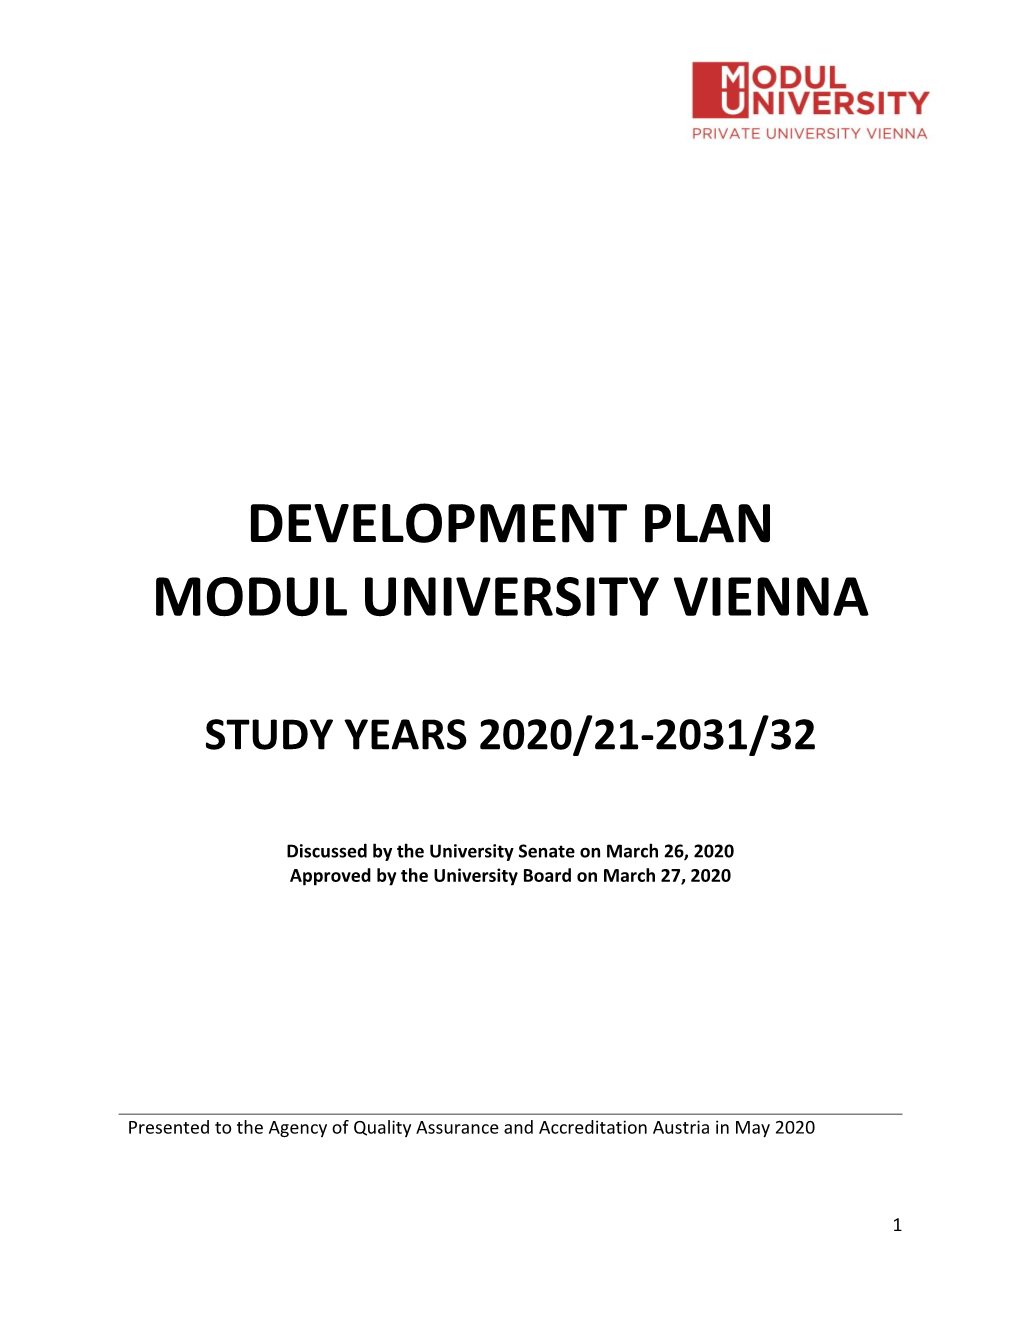 Development Plan Modul University Vienna